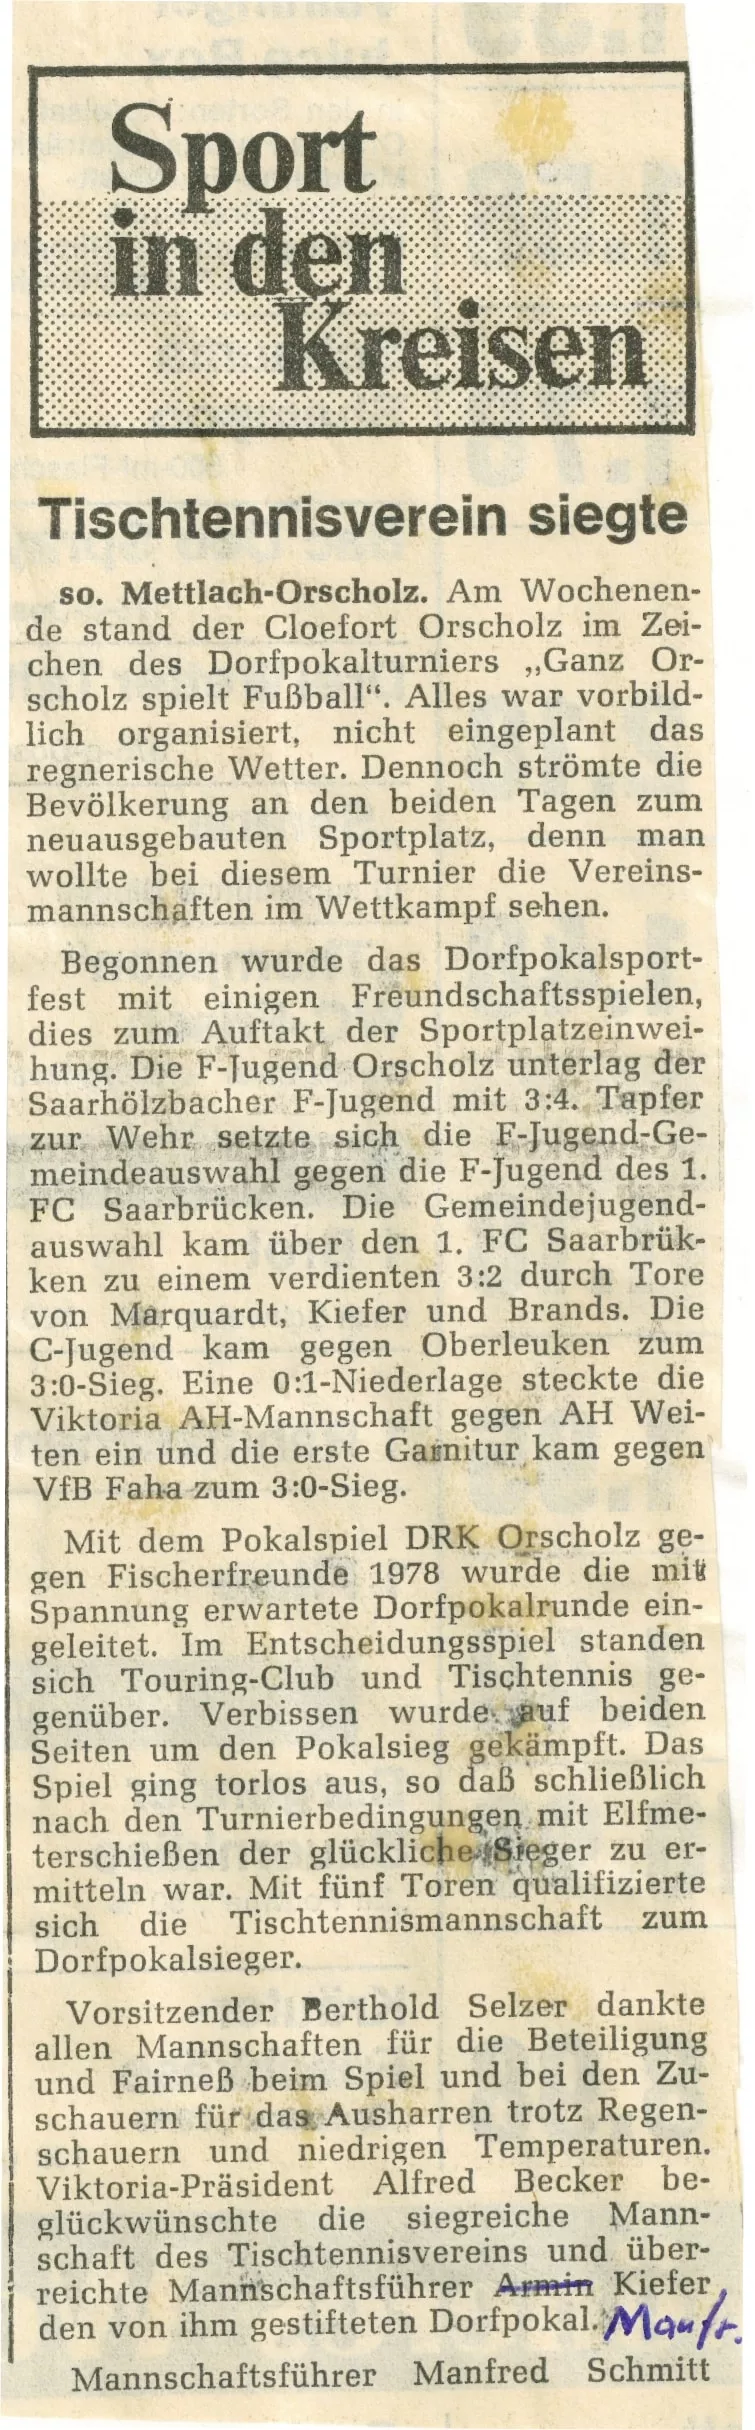 Bericht der Saarbrücker Zeitung, 1979